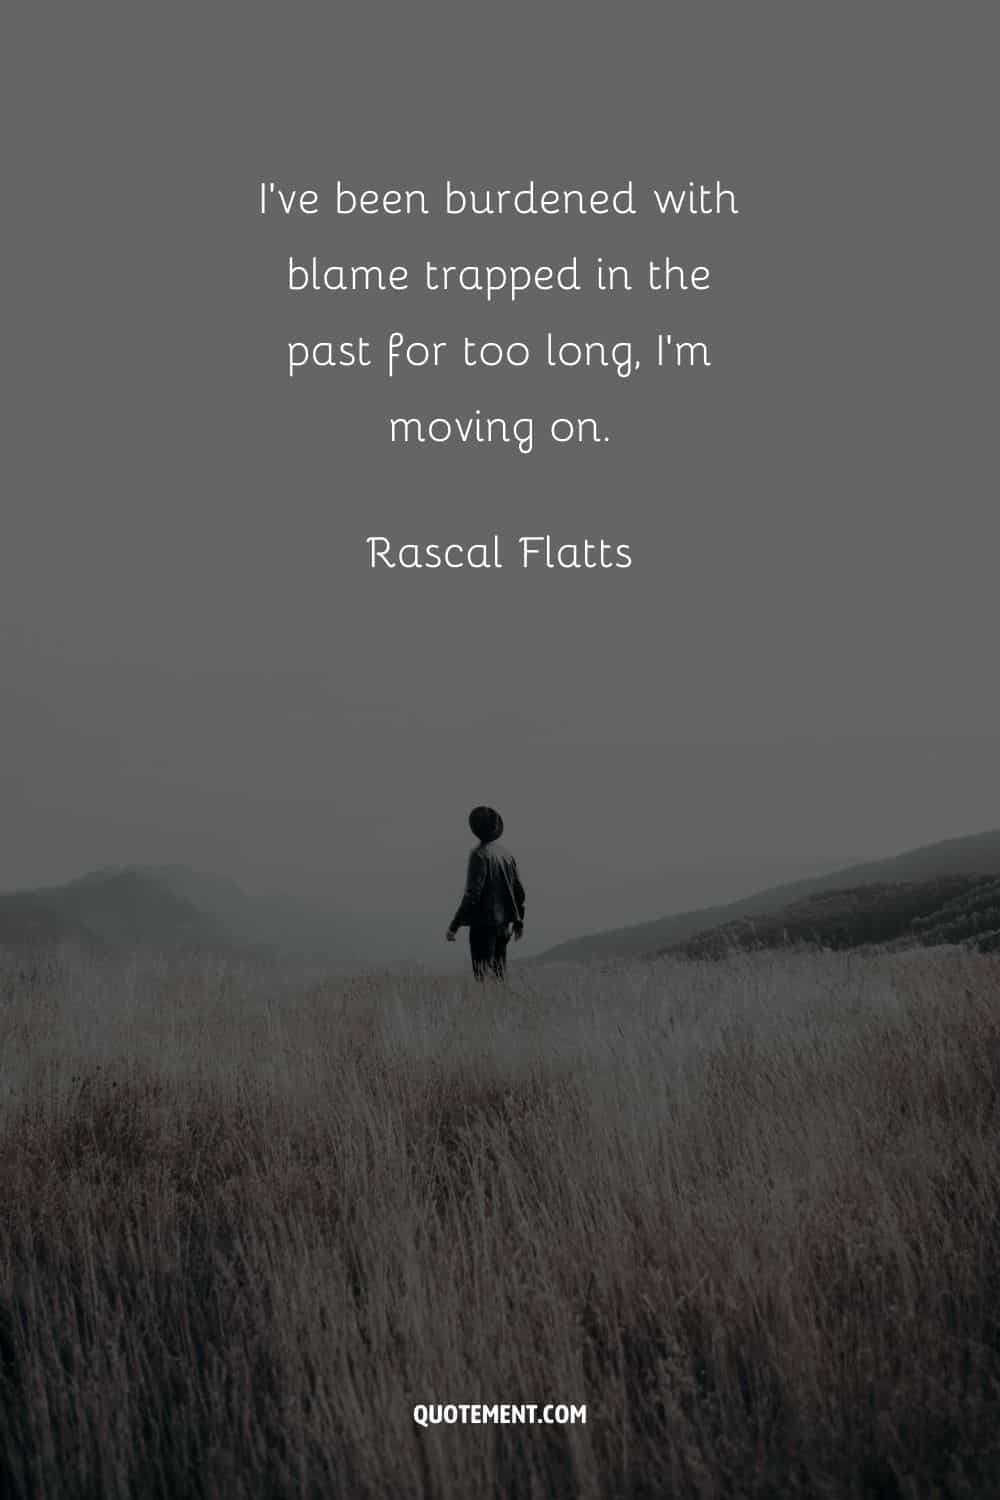 "Llevo demasiado tiempo con la culpa atrapada en el pasado, voy a seguir adelante". - Rascal Flatts